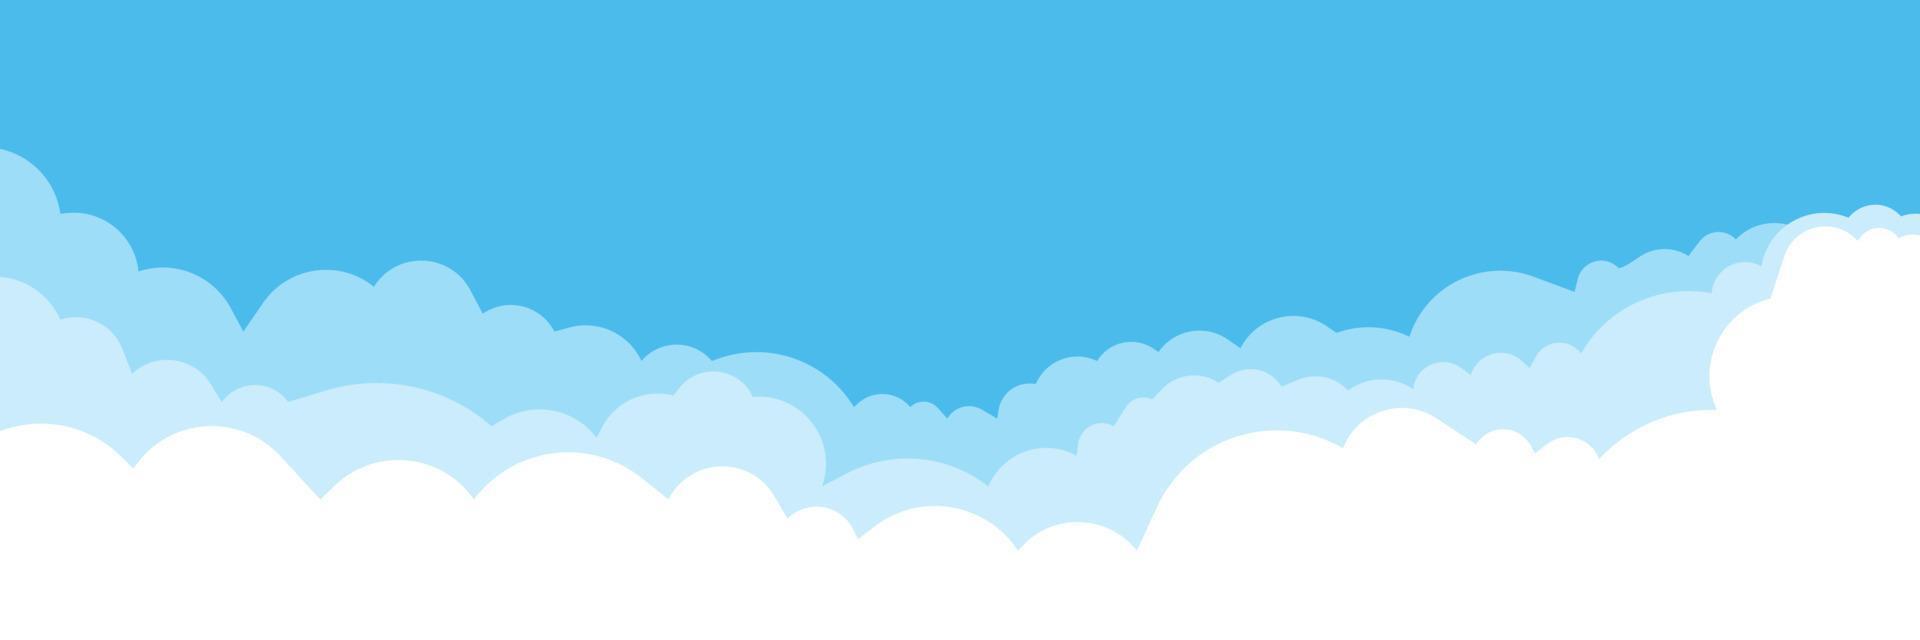 blå himmel med vit moln bakgrund. moln gräns. enkel tecknad serie design. platt stil vektor illustration.